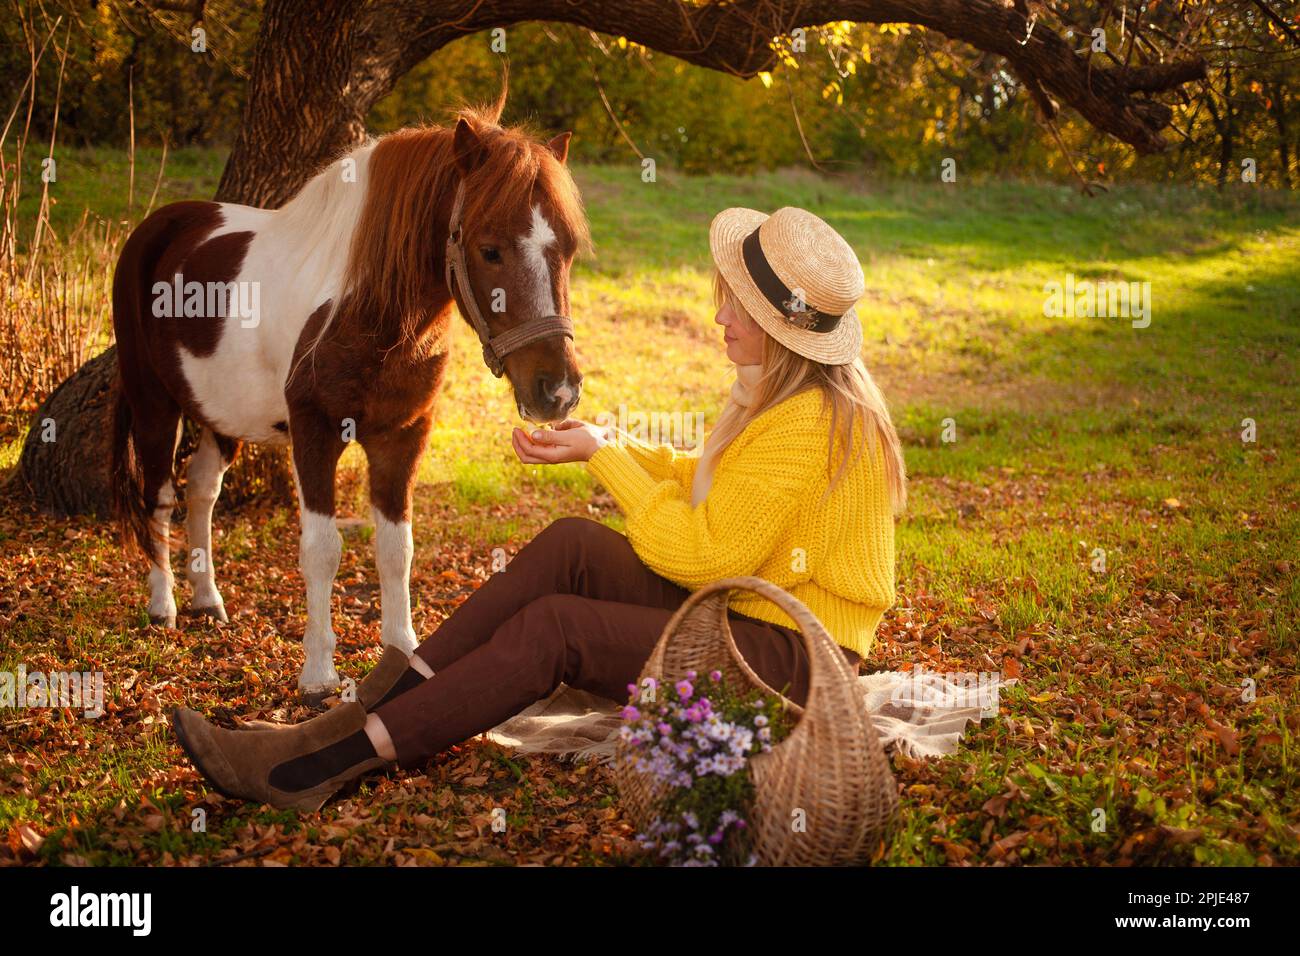 Bella donna e cavallo pony nella foresta autunnale, luce al tramonto, ritratto, attività ricreative all'aperto, amore e amicizia. fiori nel cestino Foto Stock